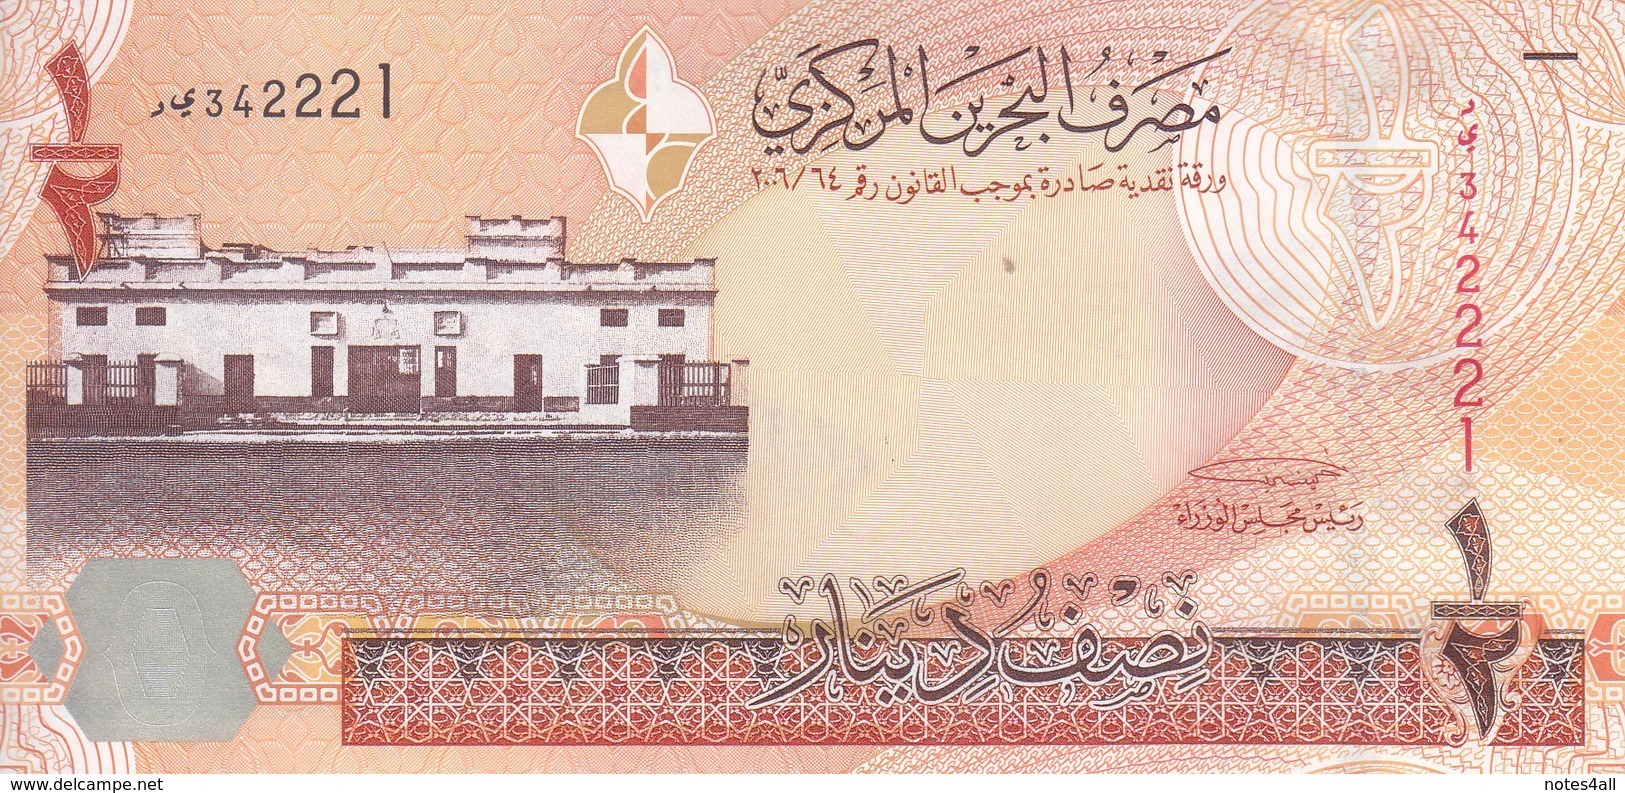 BAHRAIN 1/2 DINAR 2008 P-25 UNC */* - Bahrein